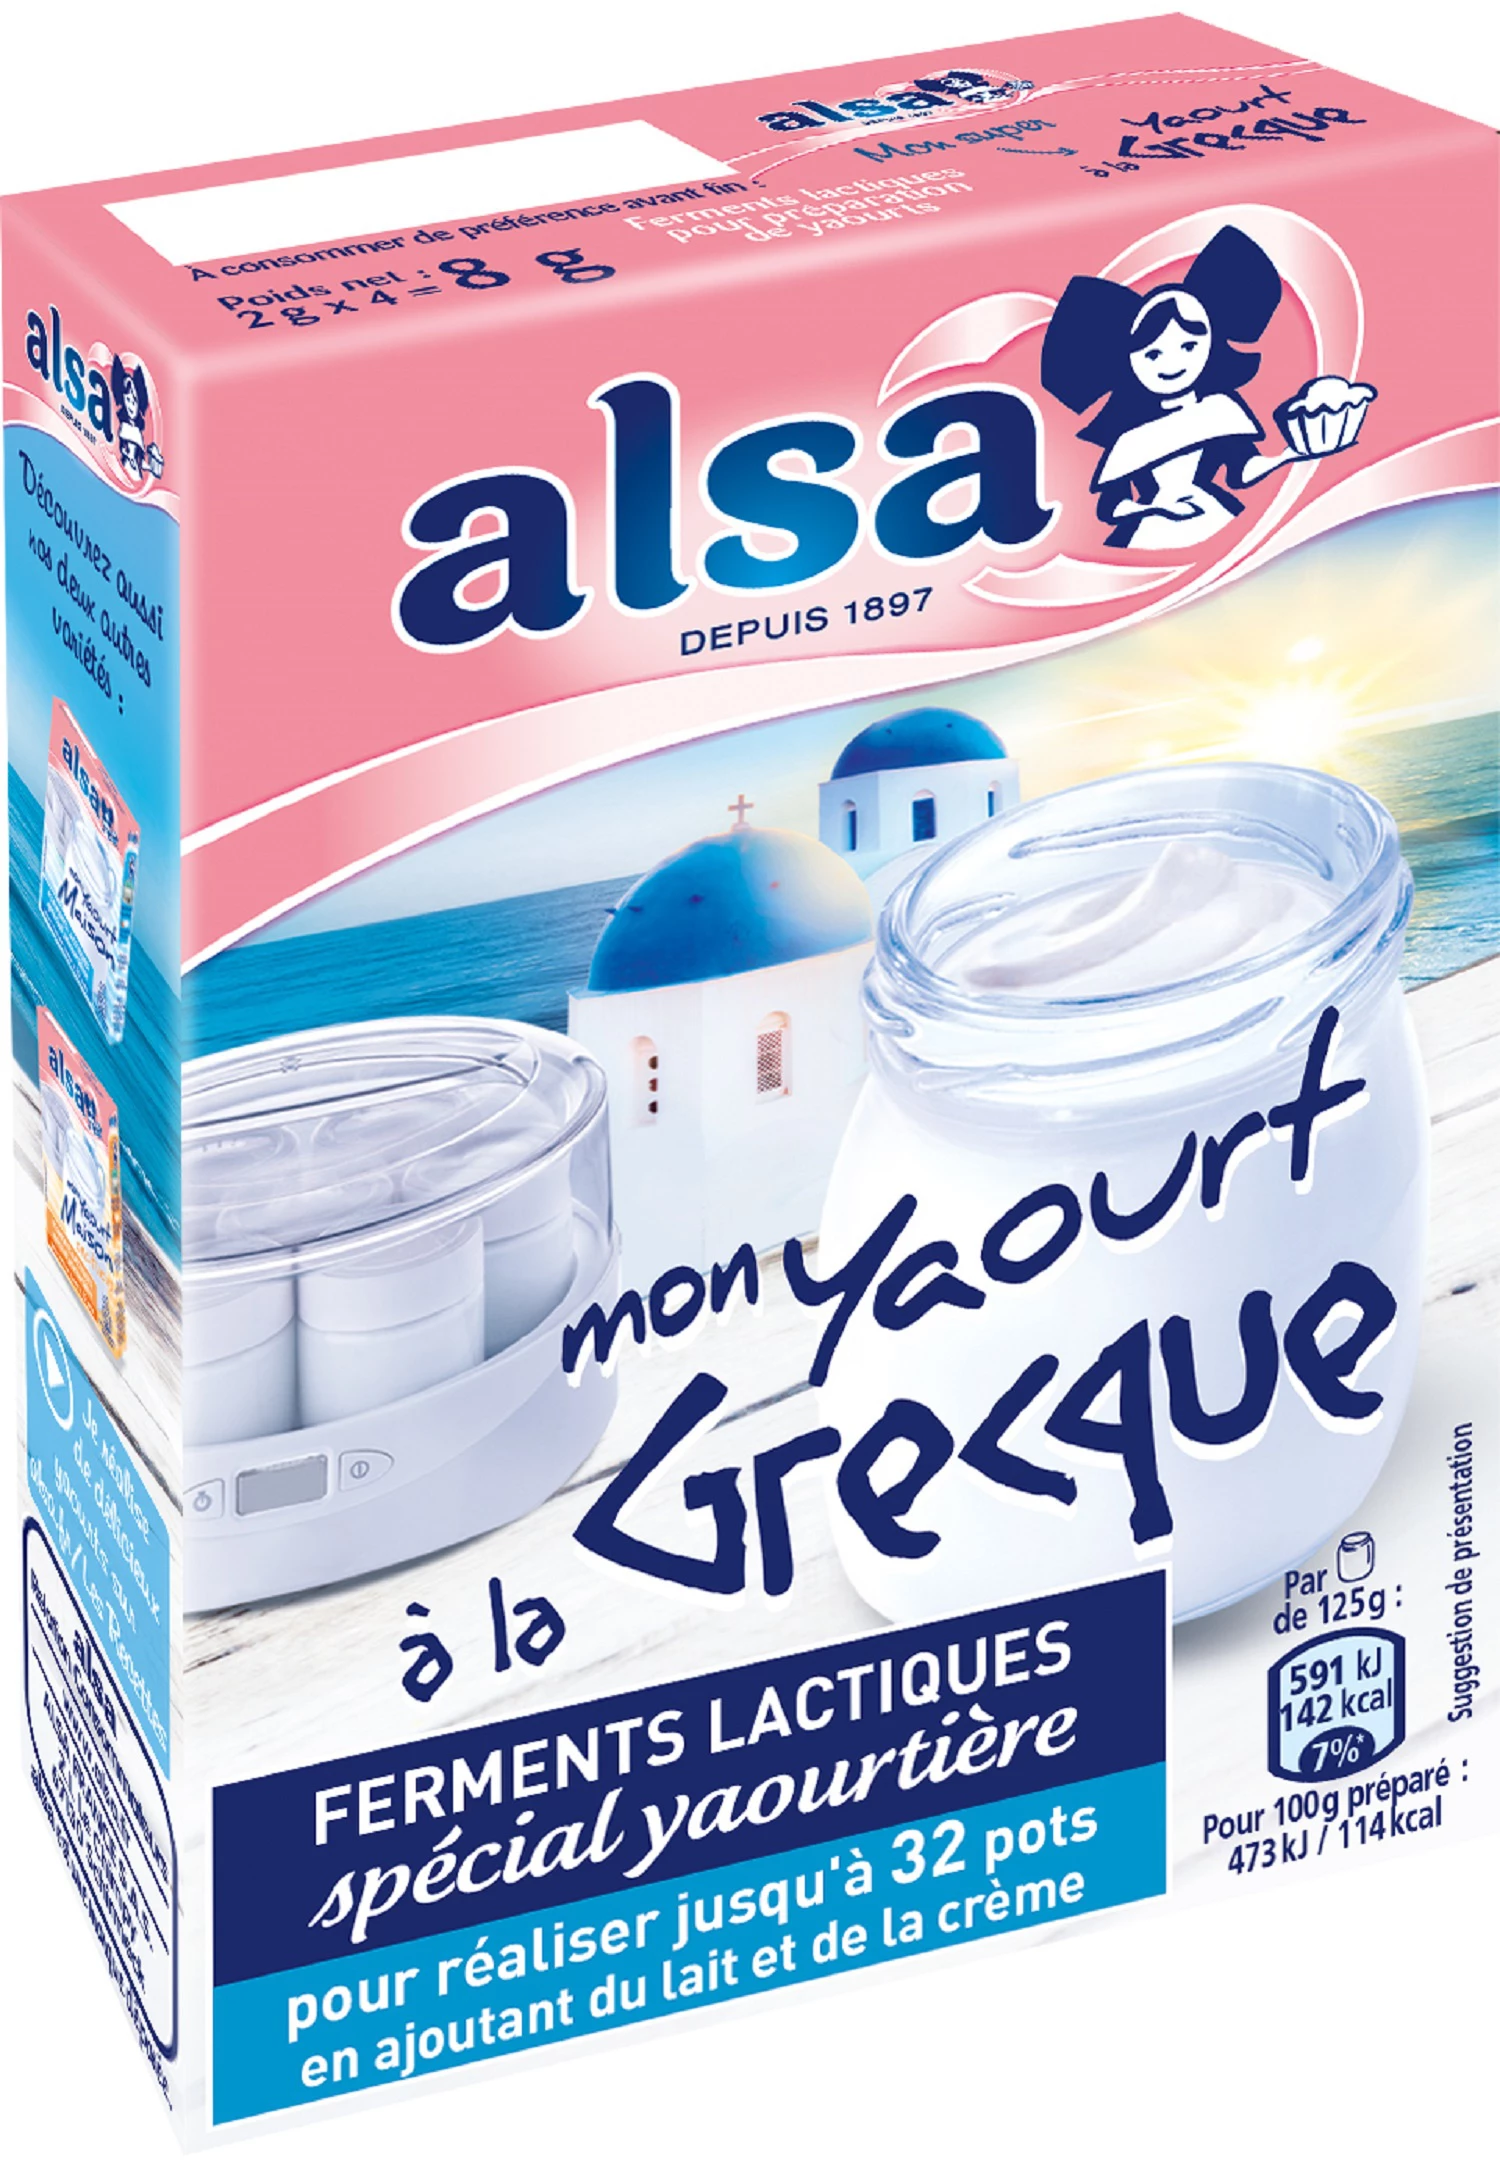 希腊酸奶制剂 4s 8g - ALSA